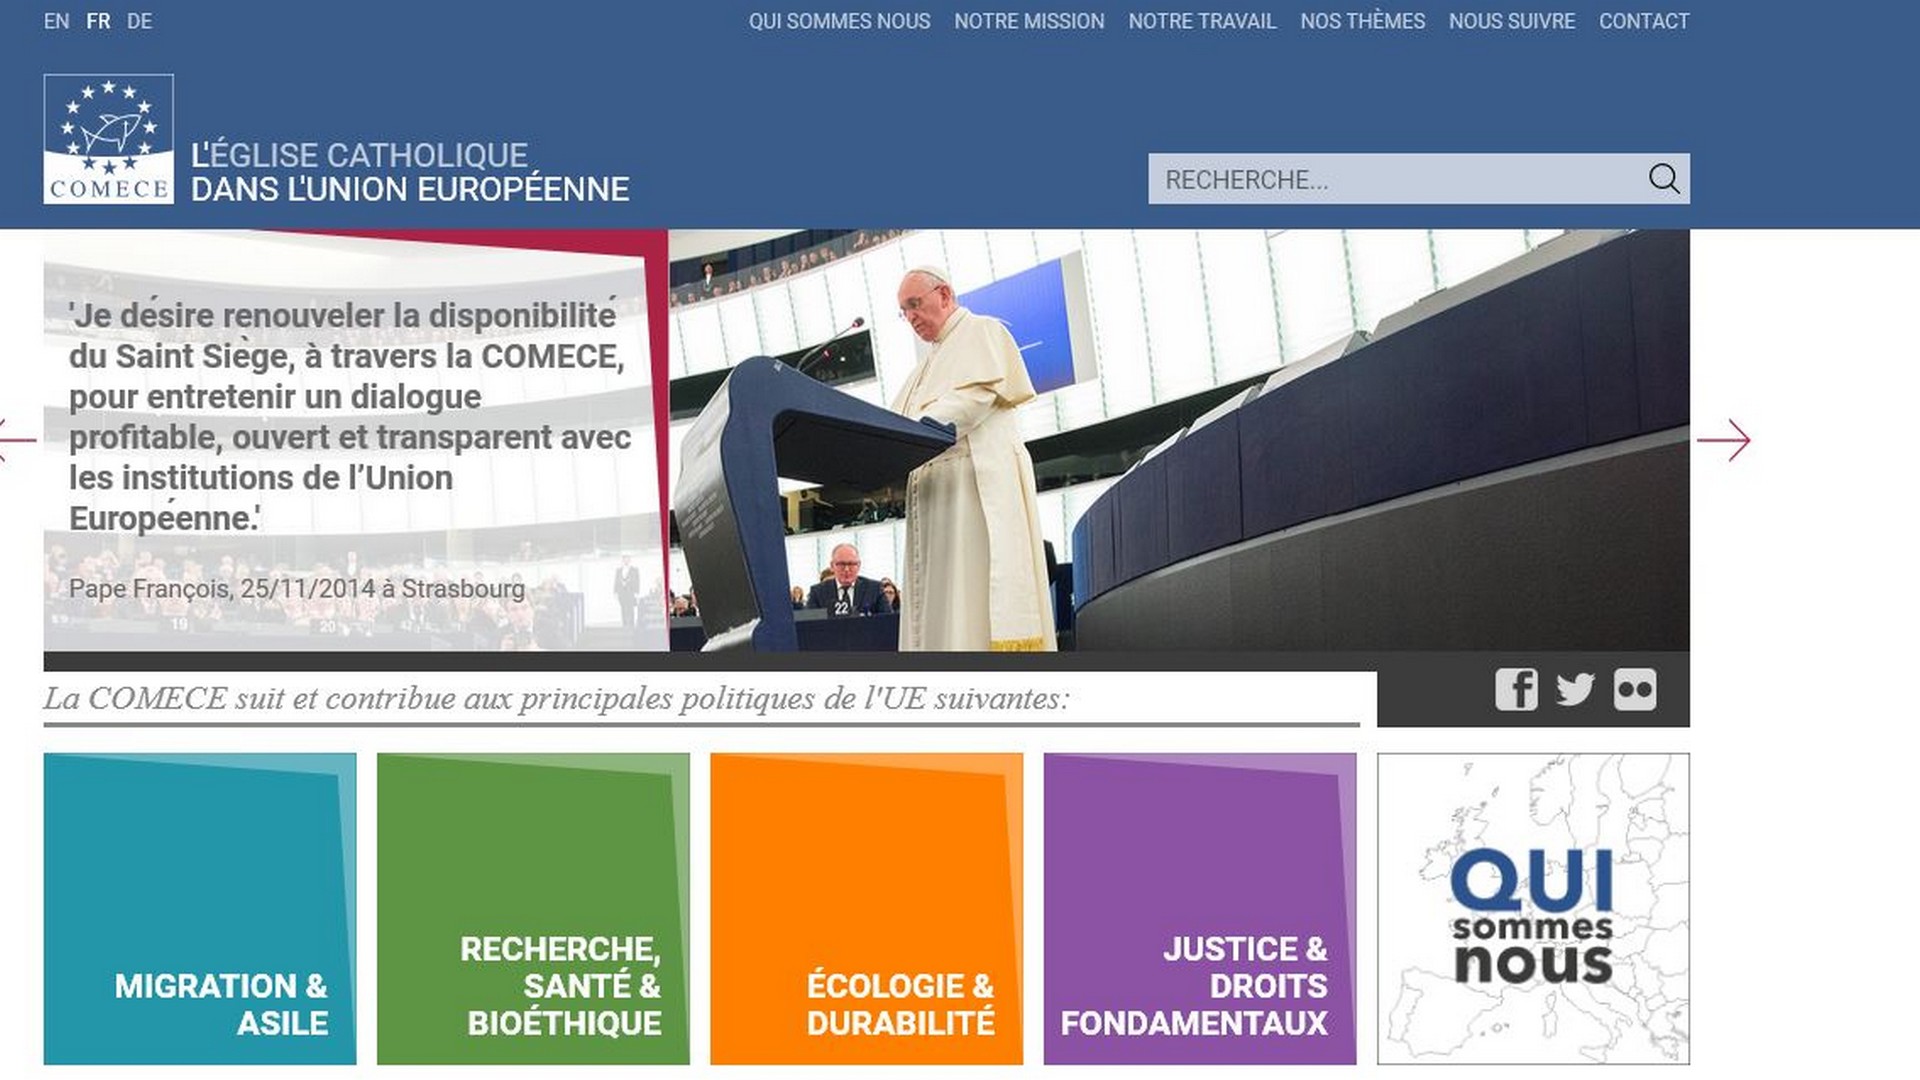 Le site web de la Commission des Episcopats de l’Union européenne (COMECE) fait peau neuve